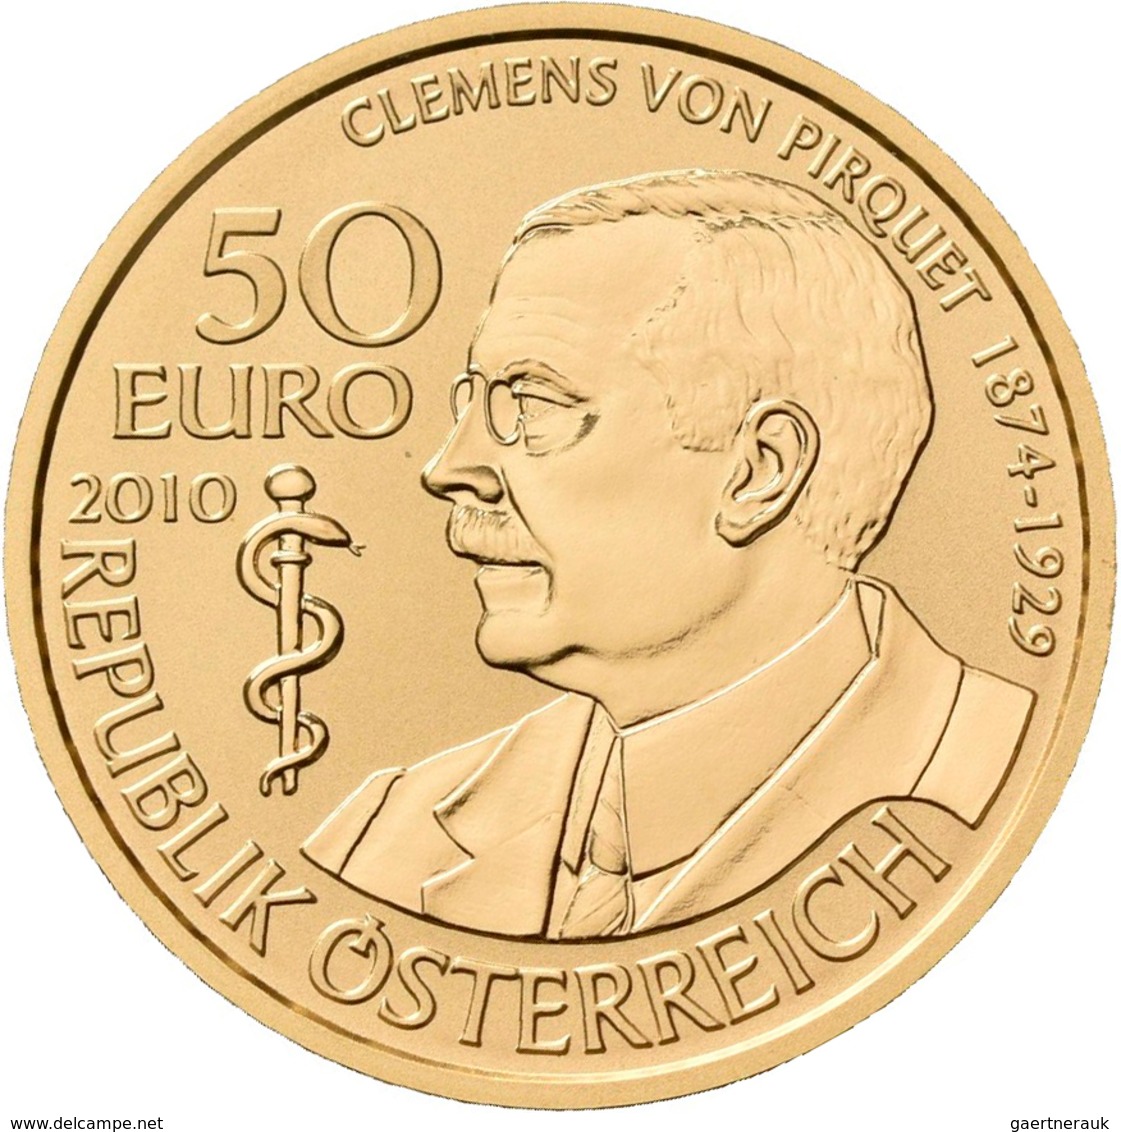 Österreich - Anlagegold: Lot 4 Goldmünzen: 50 Euro 2010 Grosse Mediziner: Baron Clement Von Pirquet. - Austria